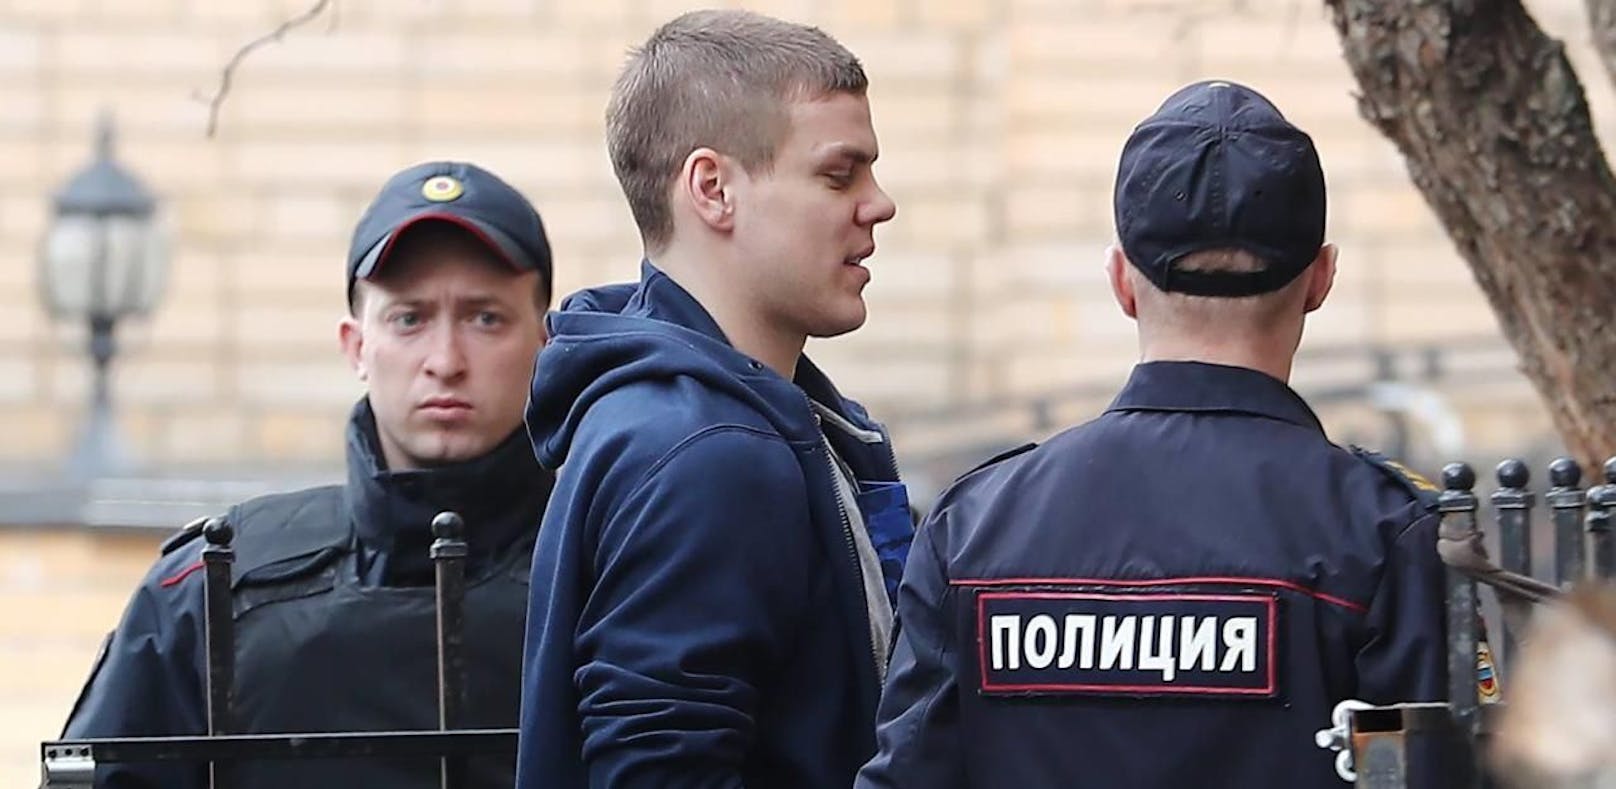 Russischen Teamspielern droht nach Schlägerei Haft